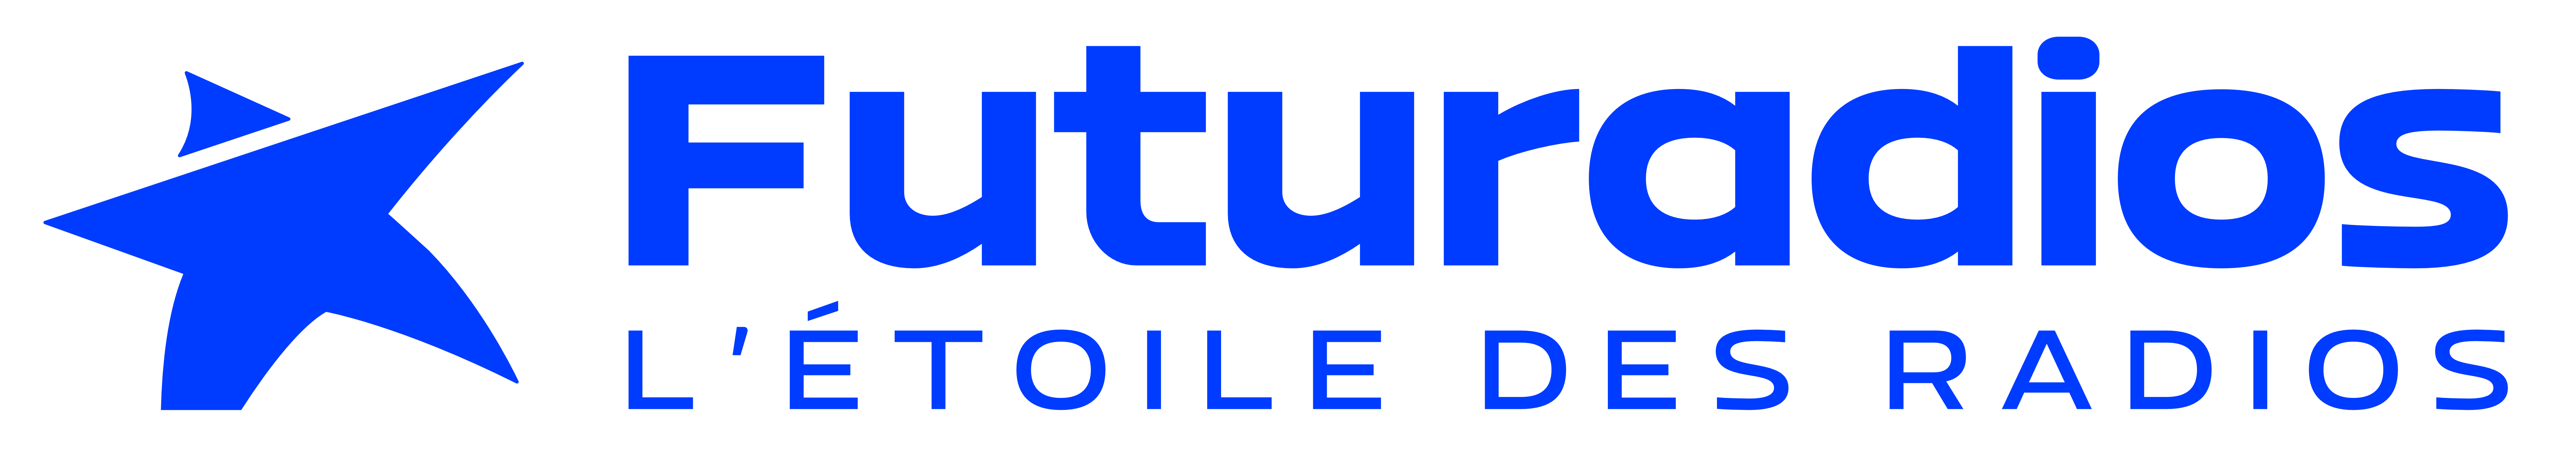 Notre équipe bénévole ⋆ Futuradios logo